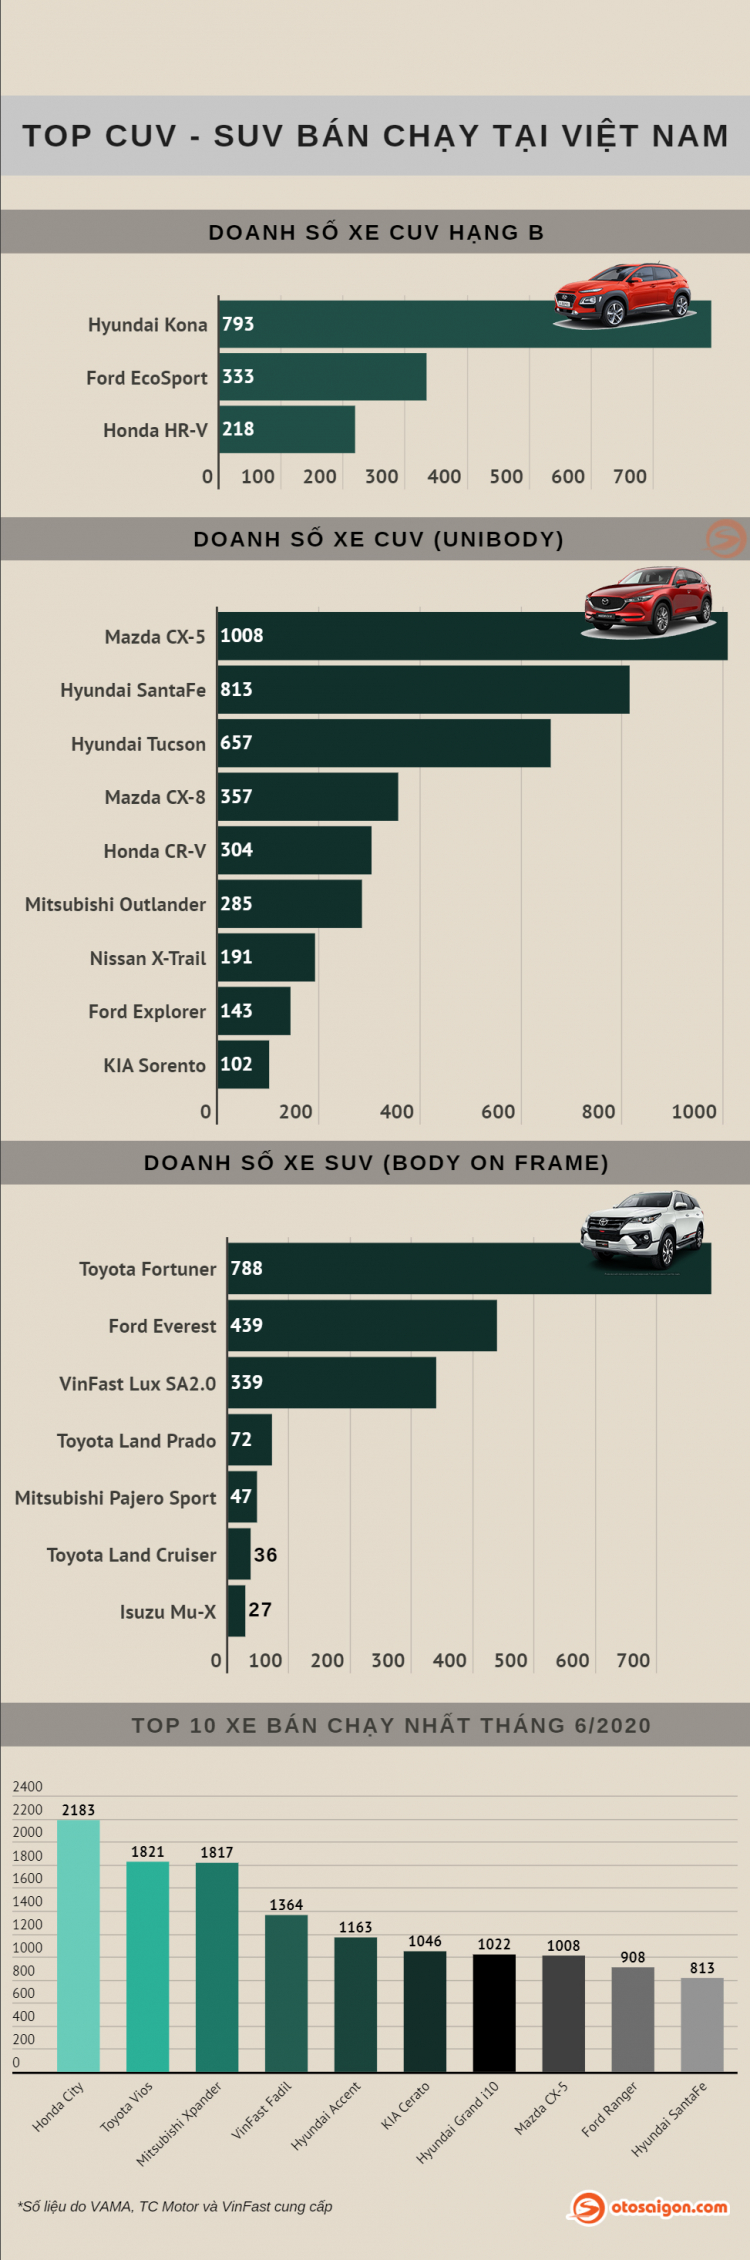 [Infographic] Top CUV-SUV bán chạy tại Việt Nam tháng 6/2020: Mazda CX-5 tăng gấp đôi doanh số